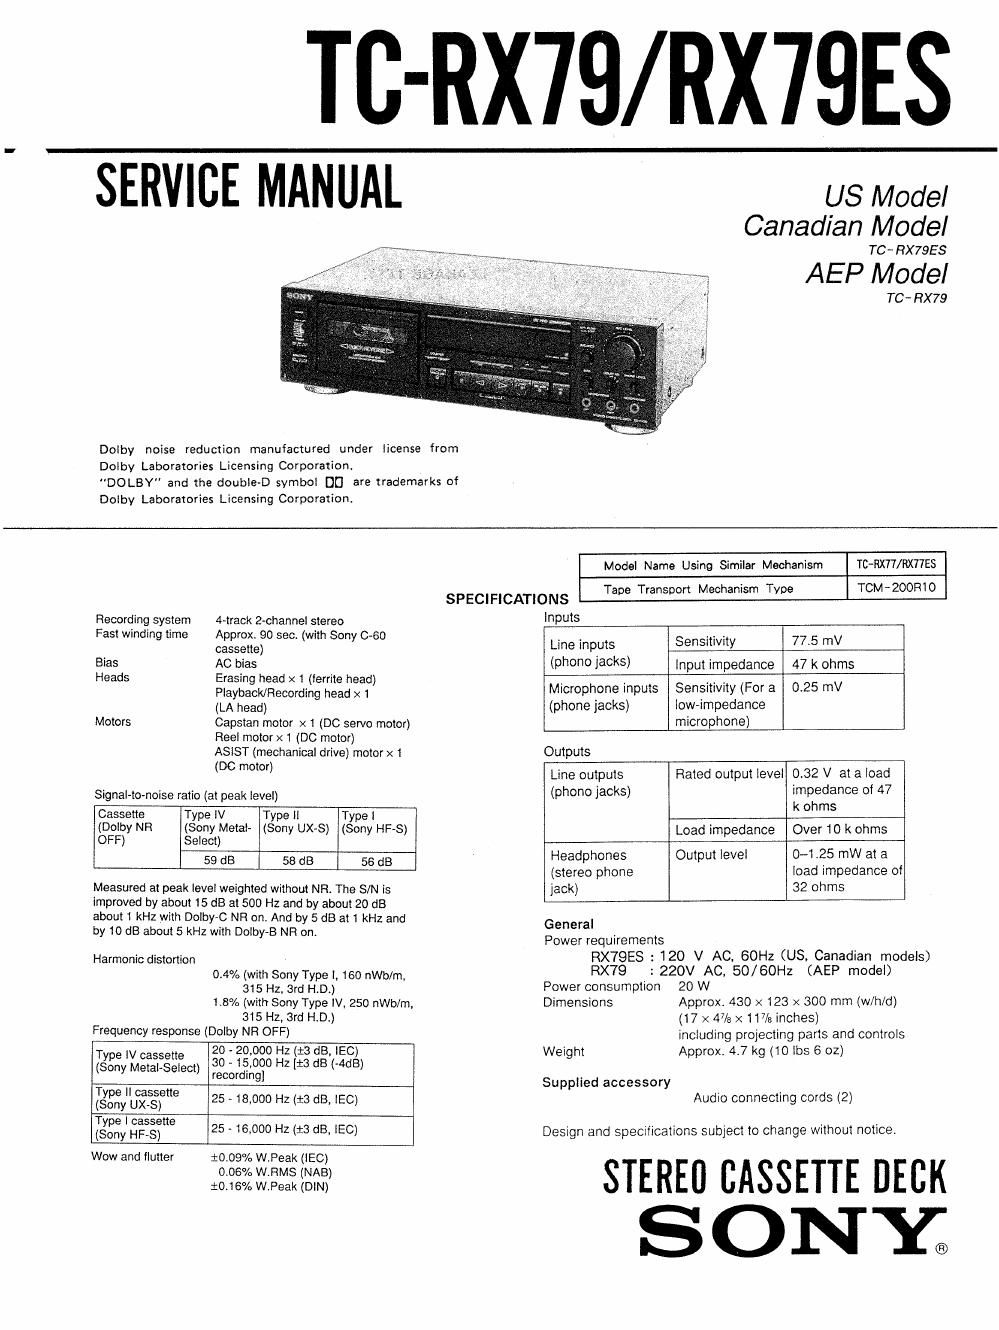 sony tc rx 79 service manual